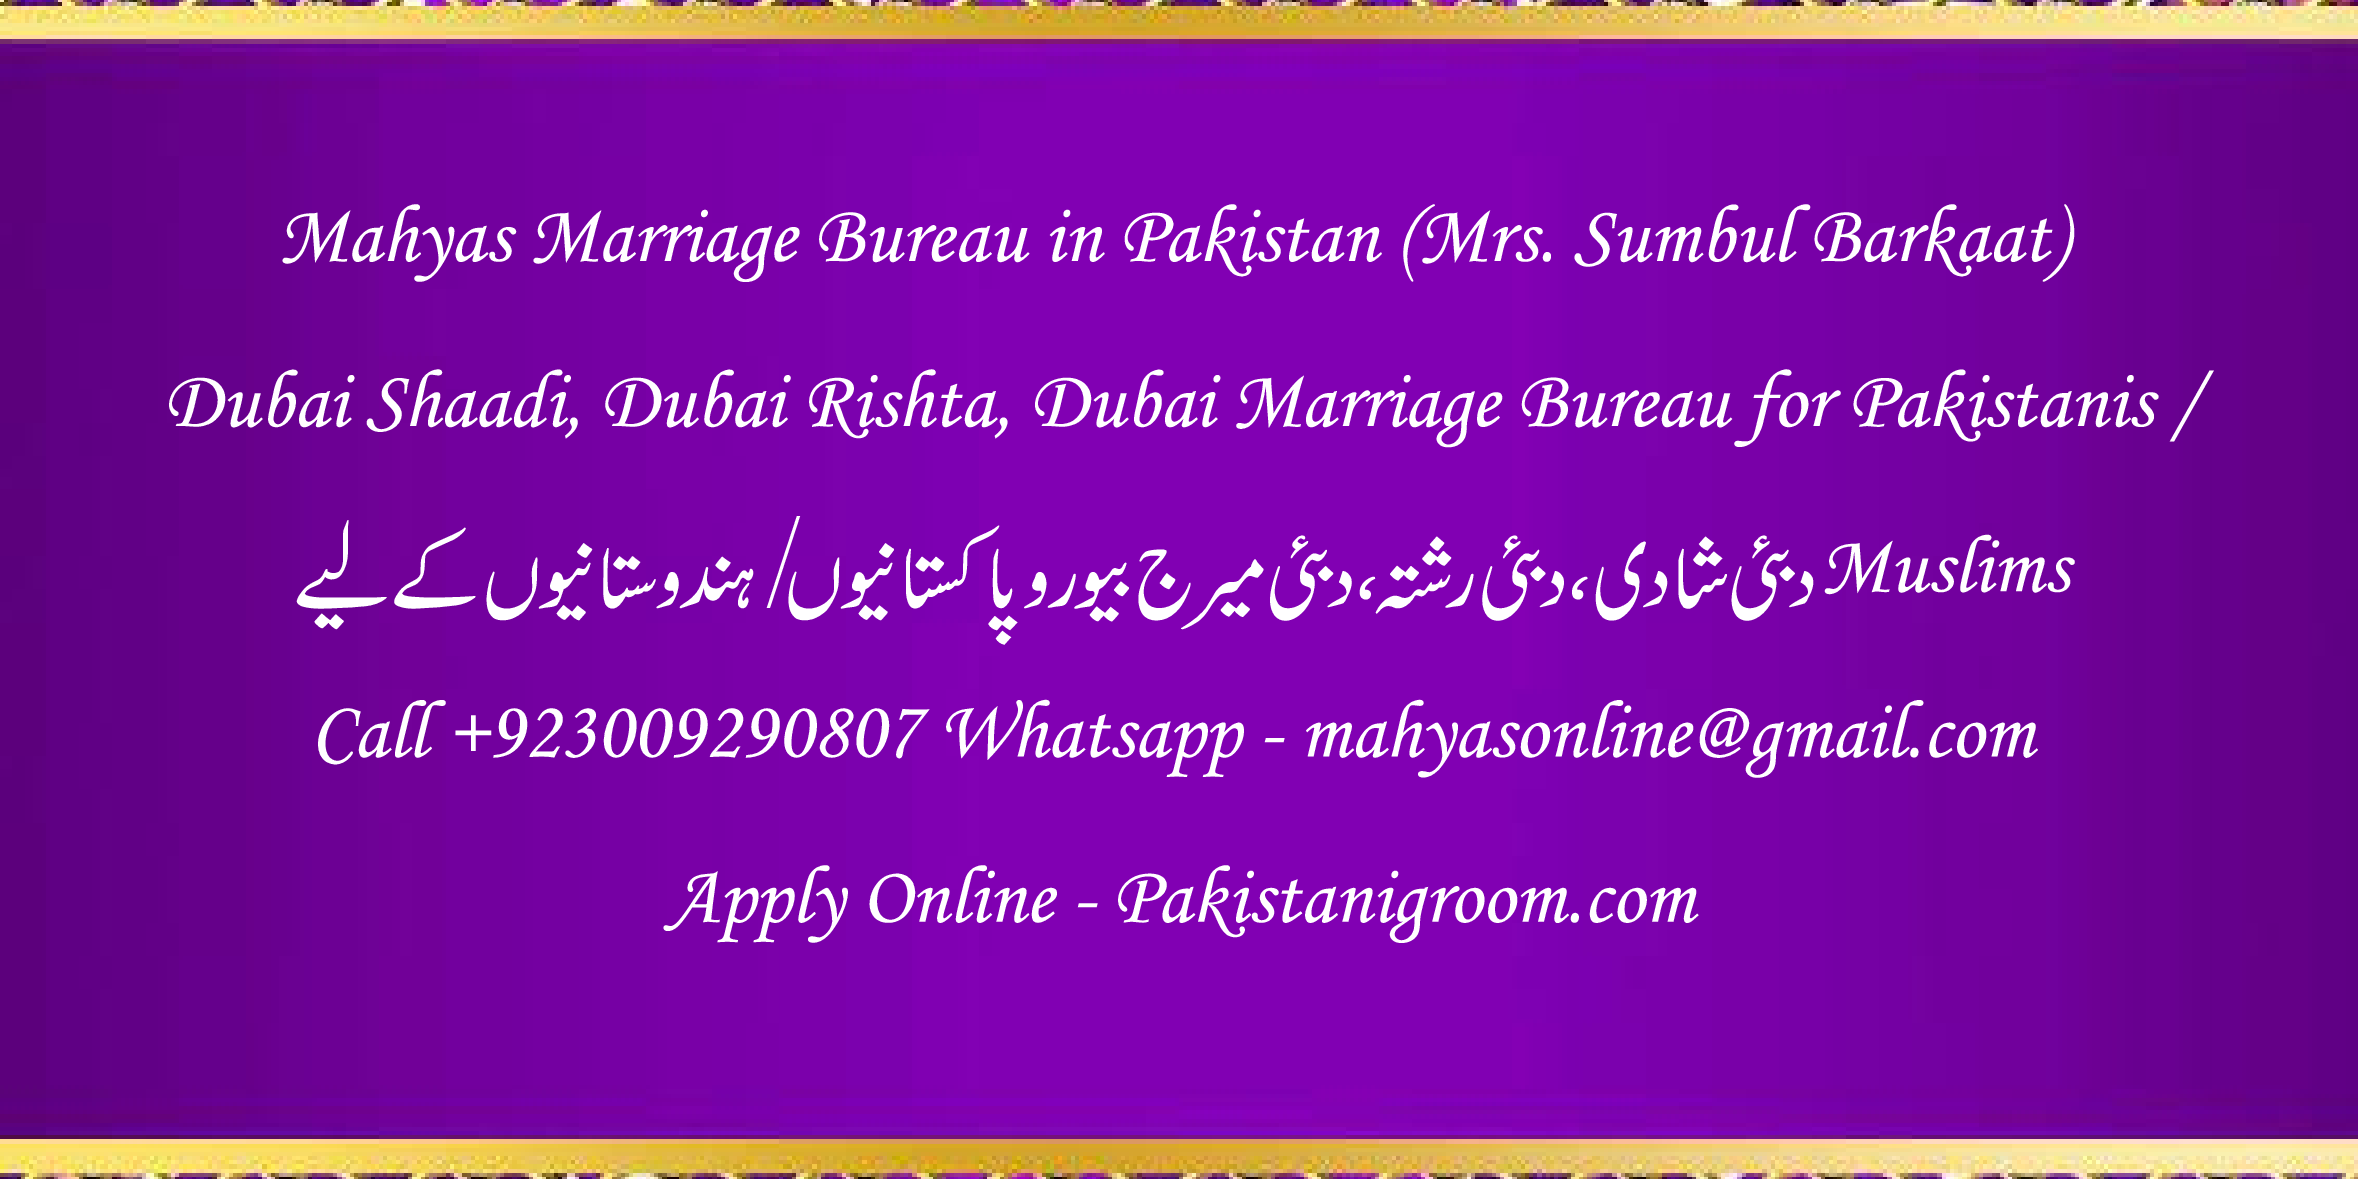 Mahyas-marriage-bureau-Karachi-Pakistan-for-Shia-Sunni-Remarriage-Divorce-Widow-Second-marriage-Punjabi-Pashto-Urdu-8.png